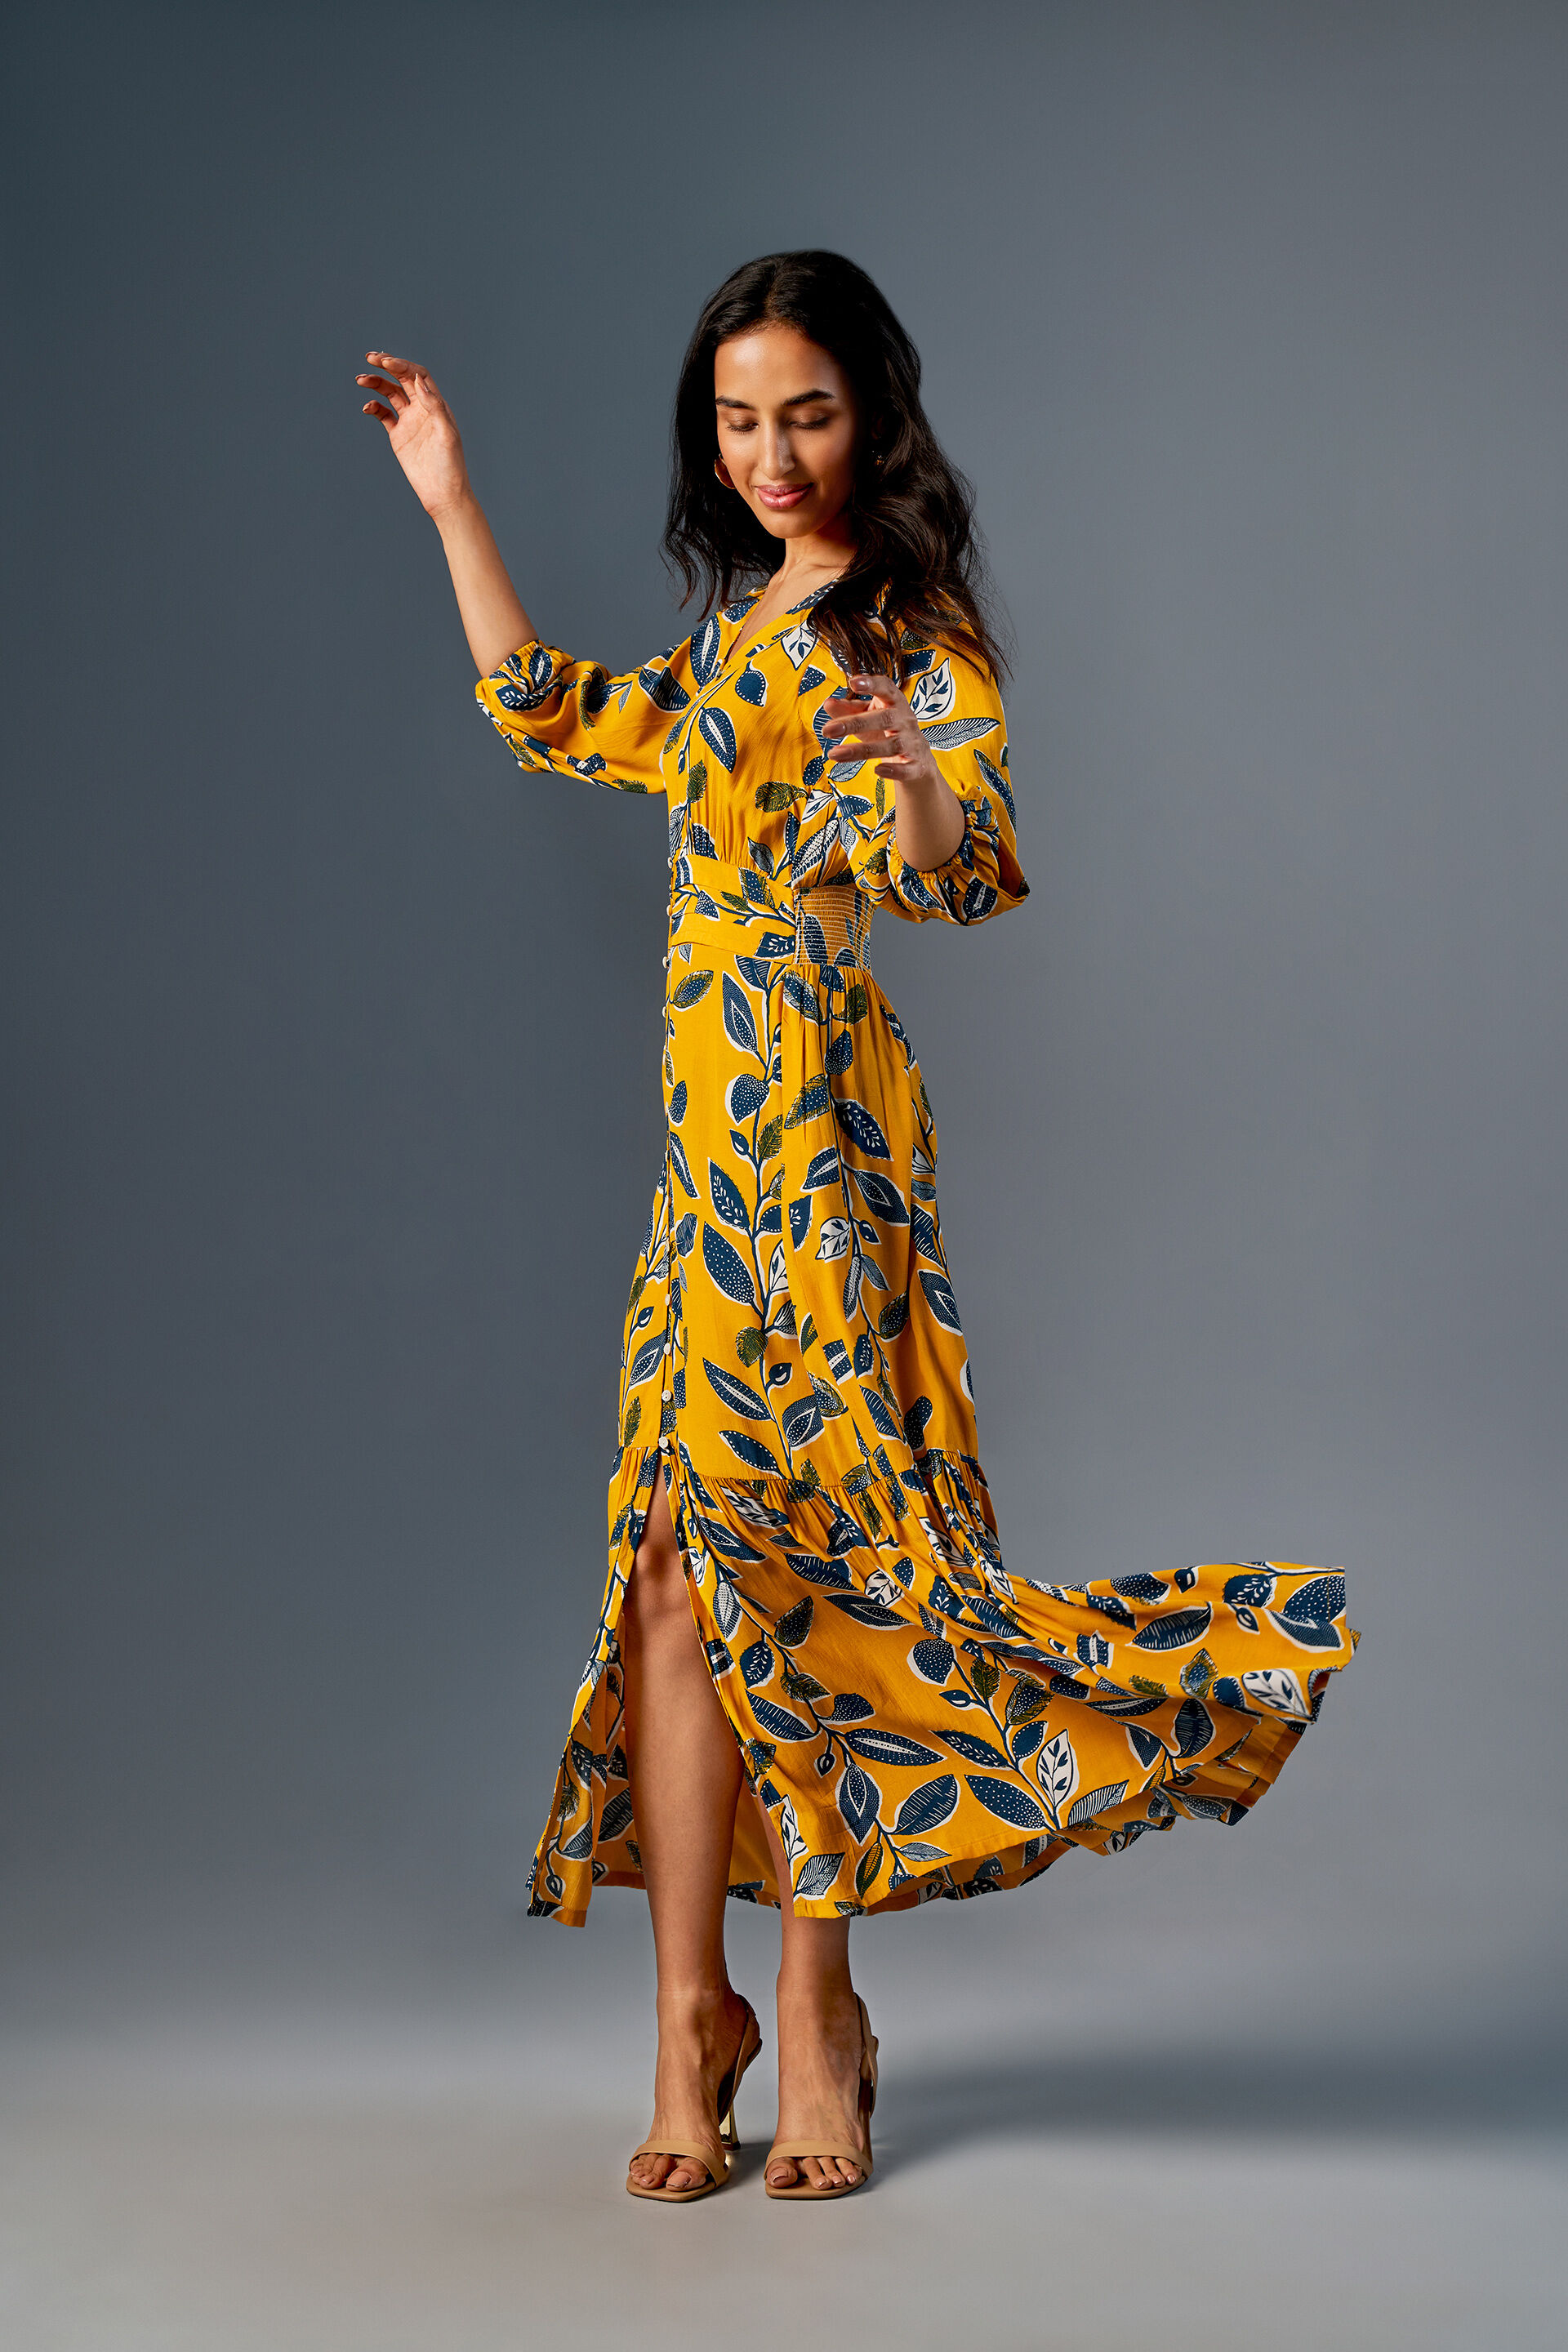 Women's Summer Beach Maxi Dress Floral Long Flowy Dresses – PinkQueenShop